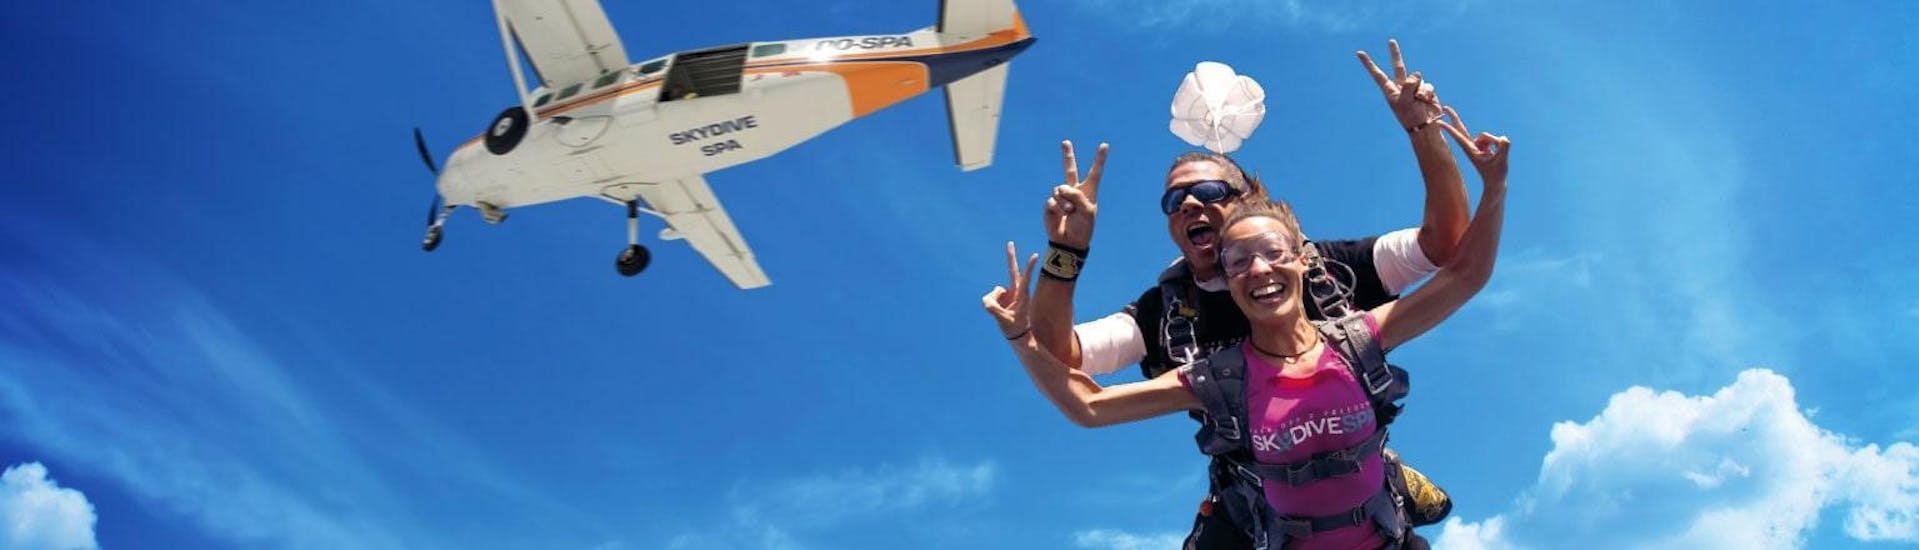 Une femme apprécie son saut en parachute avec un pilote de tandem qualifié de Skydive Spa & Cerfontaine à une altitude de 4 000 m au-dessus de Spa.